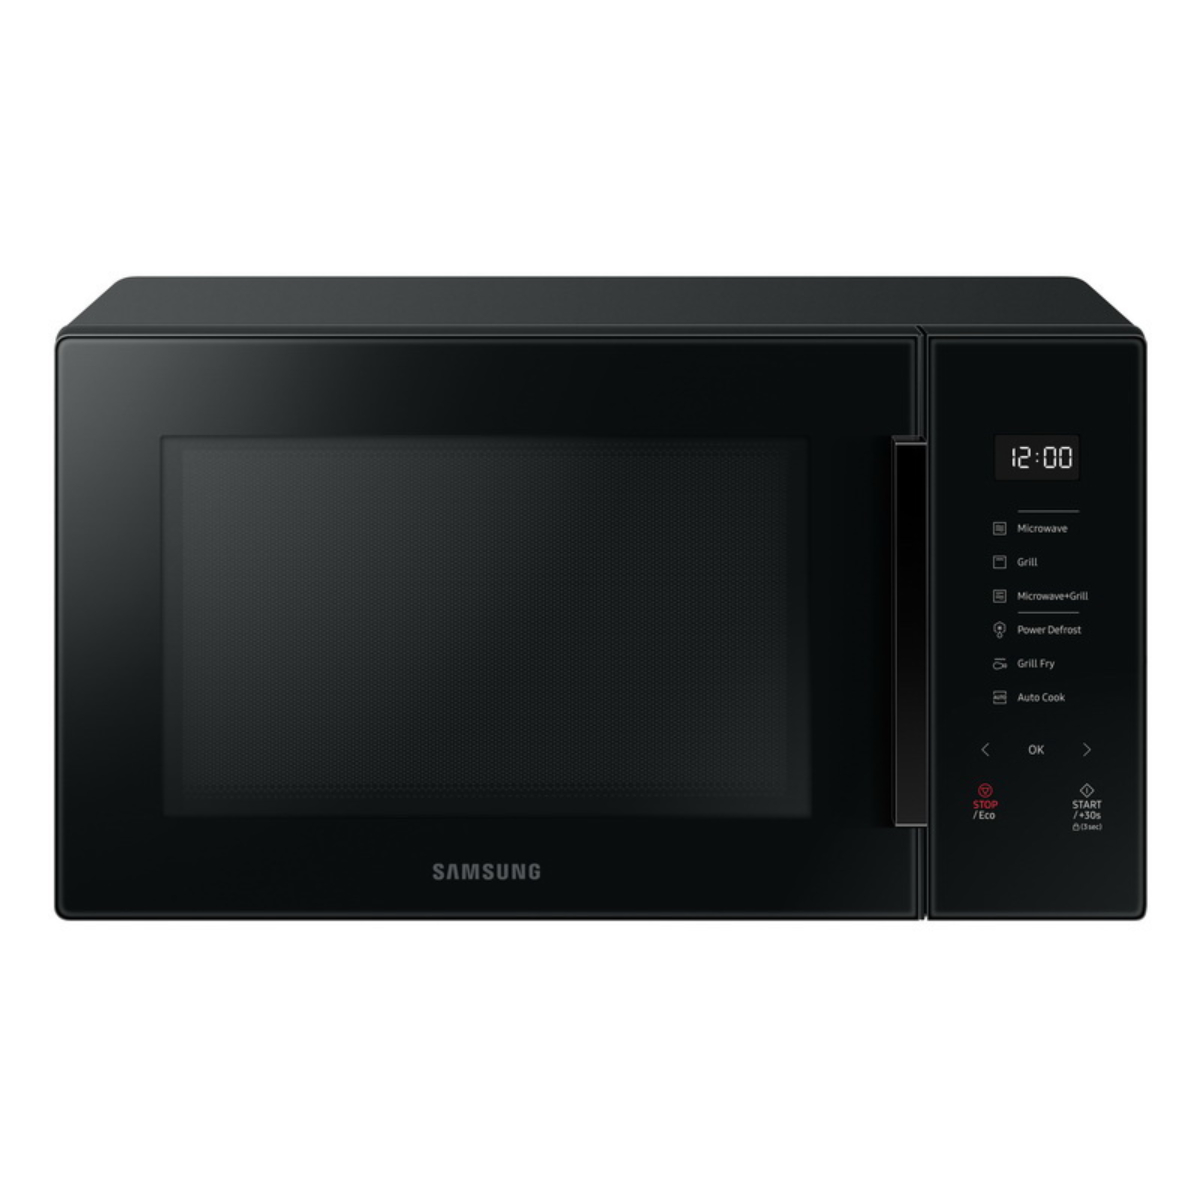 Samsung Microwave (900 W, 30 L, Black) MG30T5018CK/ST